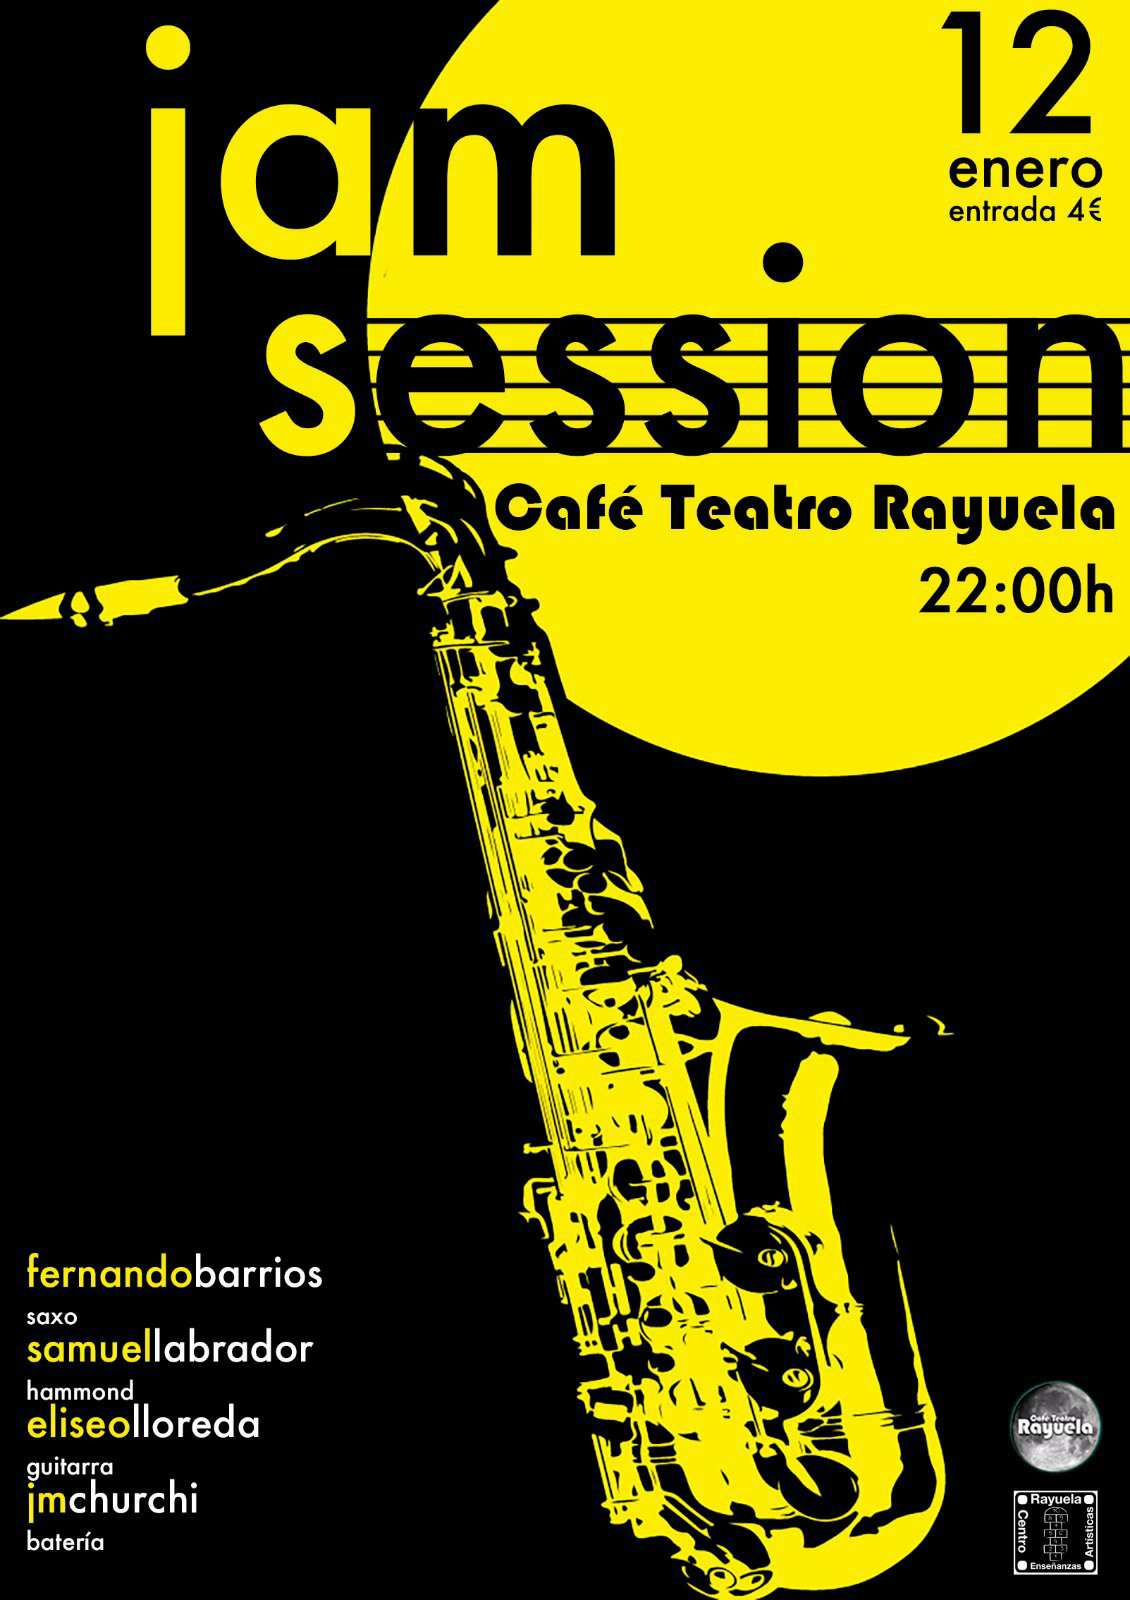 Jam session liderada por Fernando Barrios en el Café Teatro Rayuela